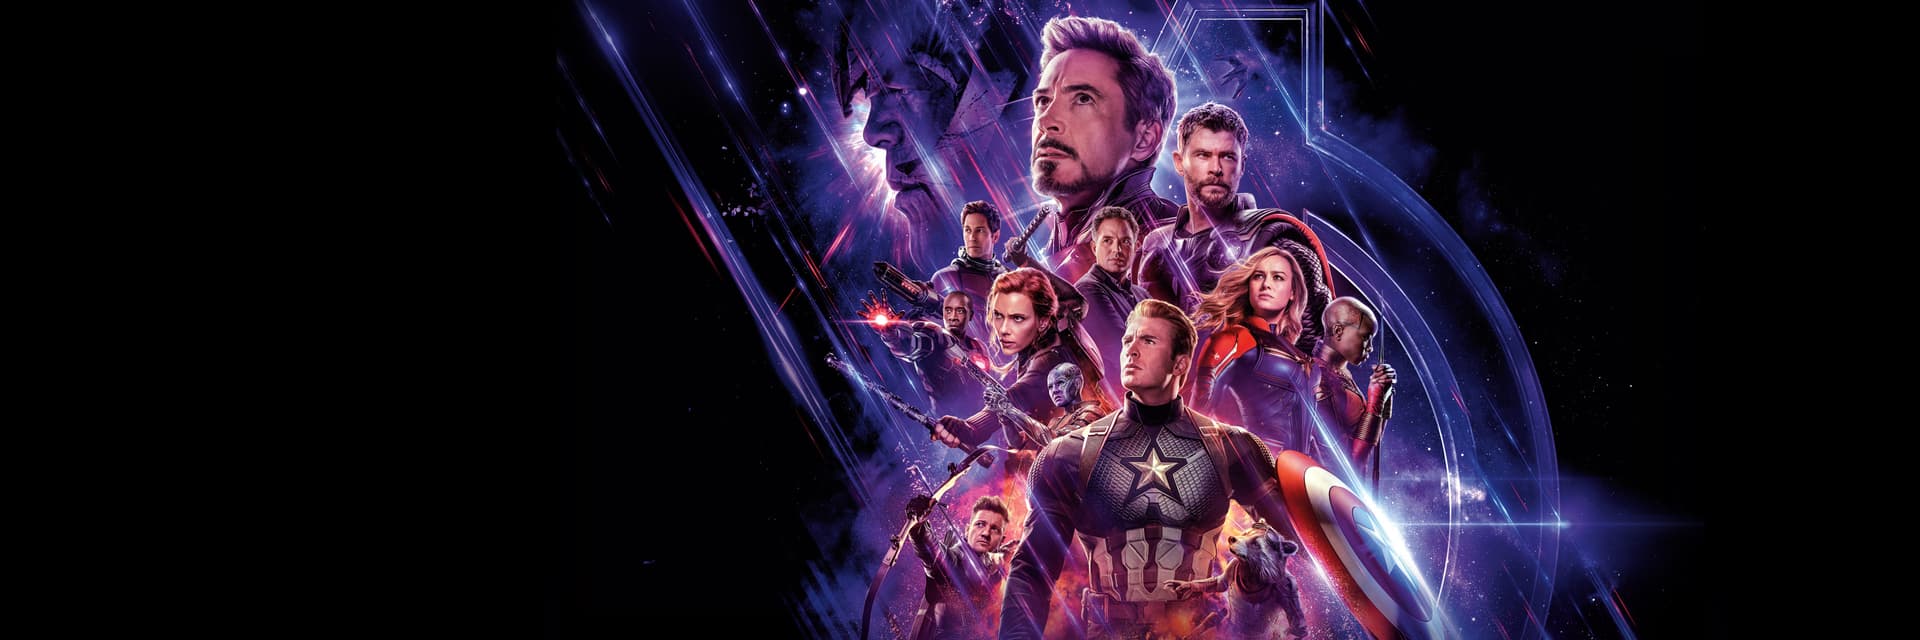 Marvel Studios' Avengers: Endgame Movie Poster